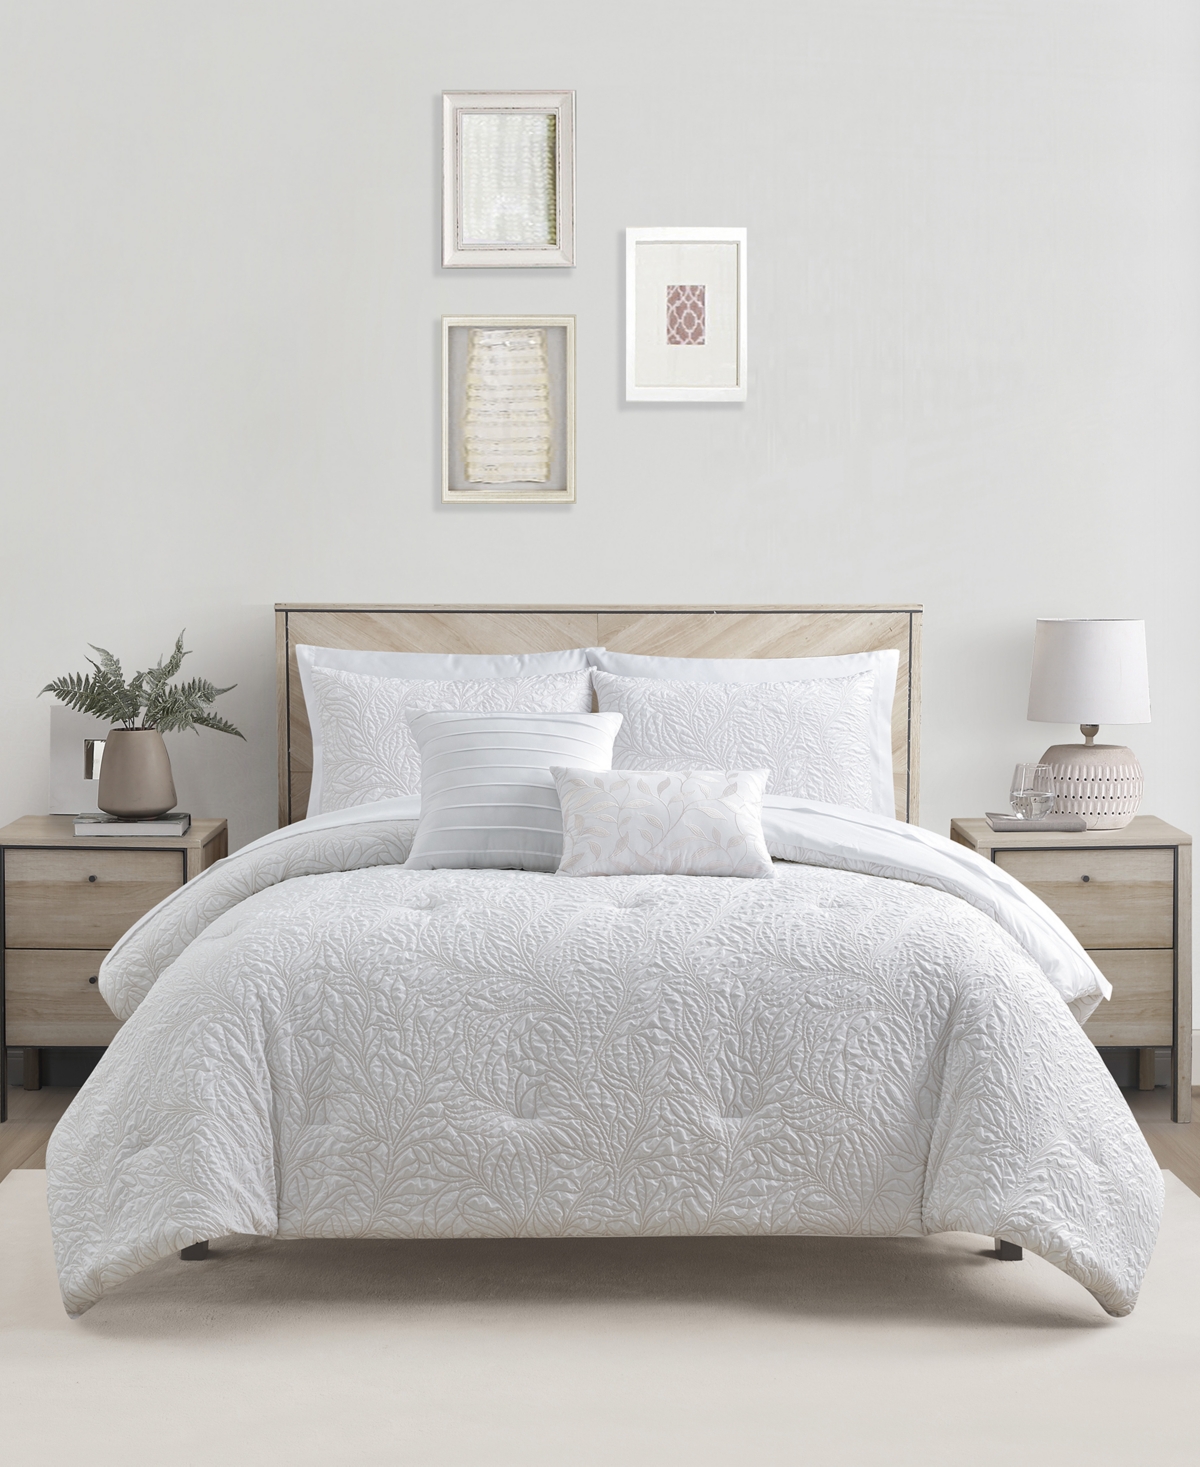 Sunham Vine 9-pc. Comforter Set, Full, Created For Macy's In White